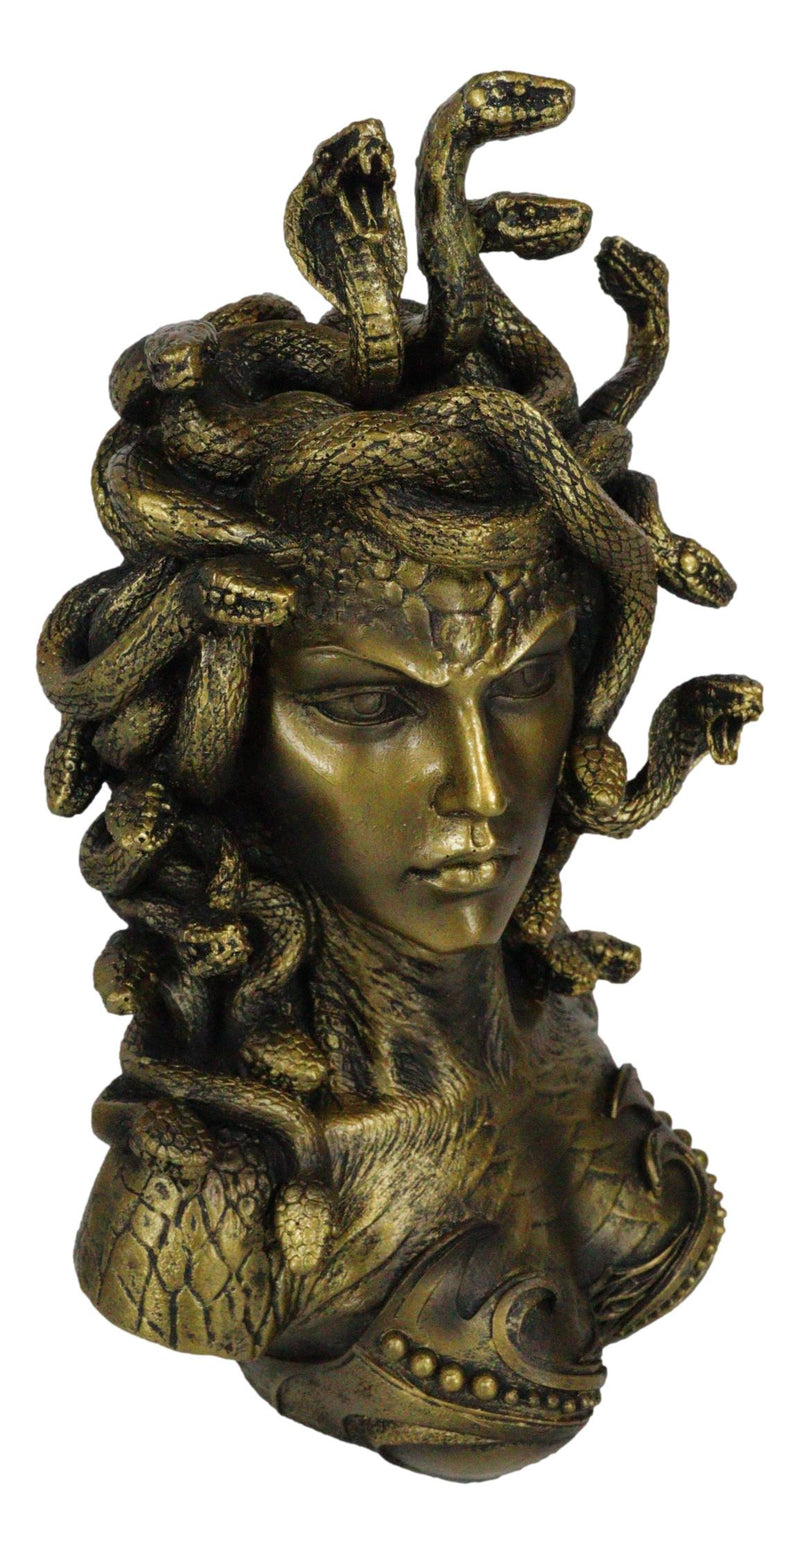 Medusa Head Snake Hair Goddess Greek Myth Gorgon for Kids Art Board Print  for Sale by NUMAcreations